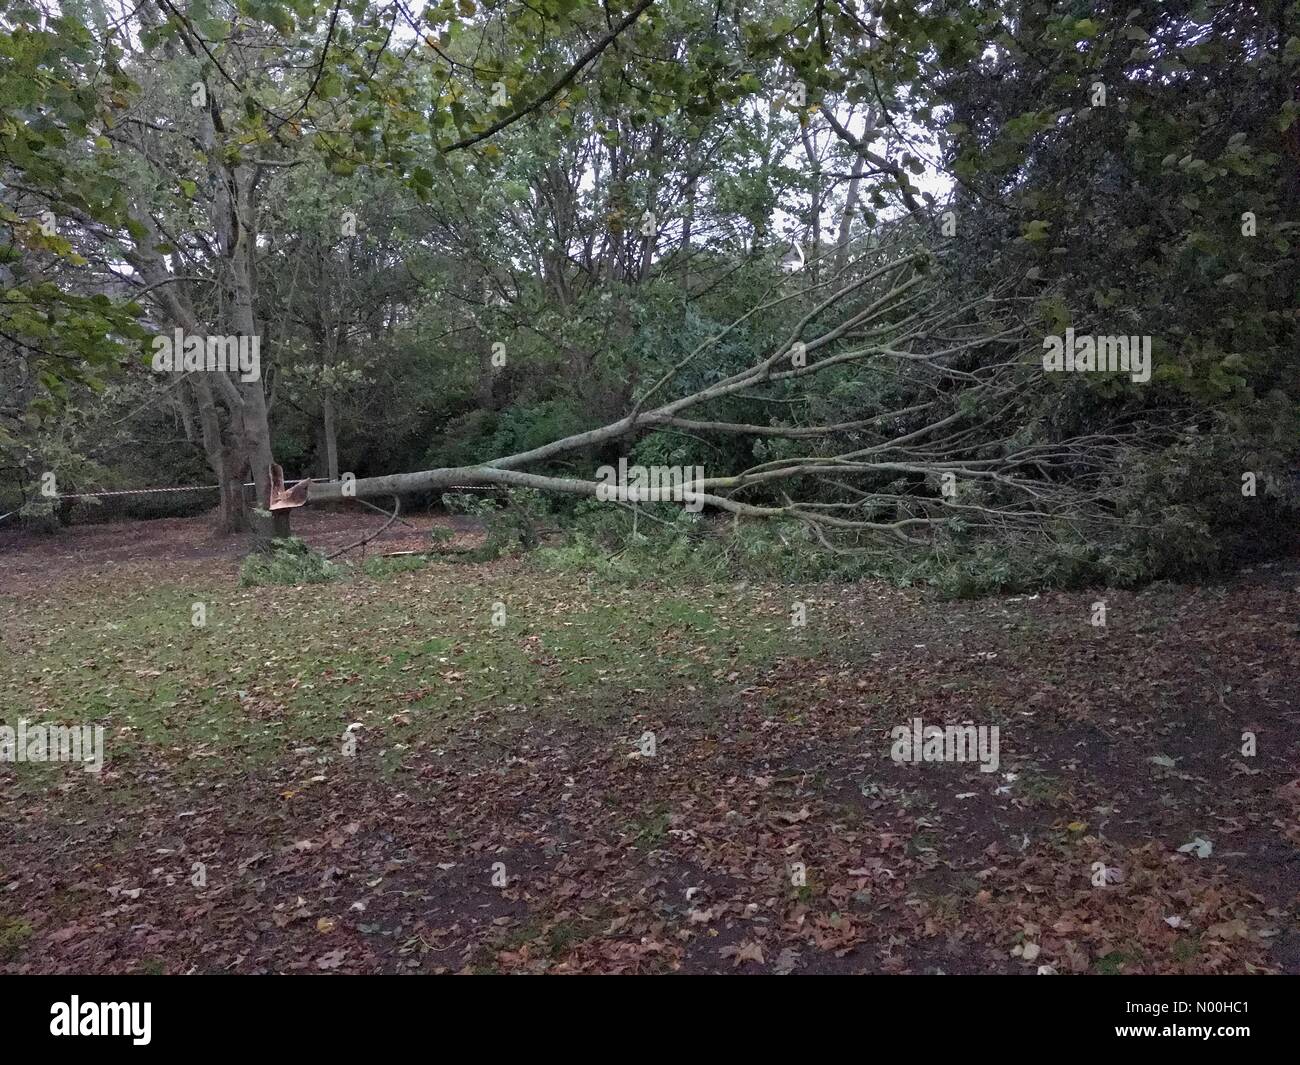 El clima del REINO UNIDO: fuertes vientos asociados con Storm Brian derribar un árbol en Grove Park, Weston-super-Mare, en el Reino Unido. Aparte de esto no parece haber otros daños en la zona hasta la fecha. Foto de stock